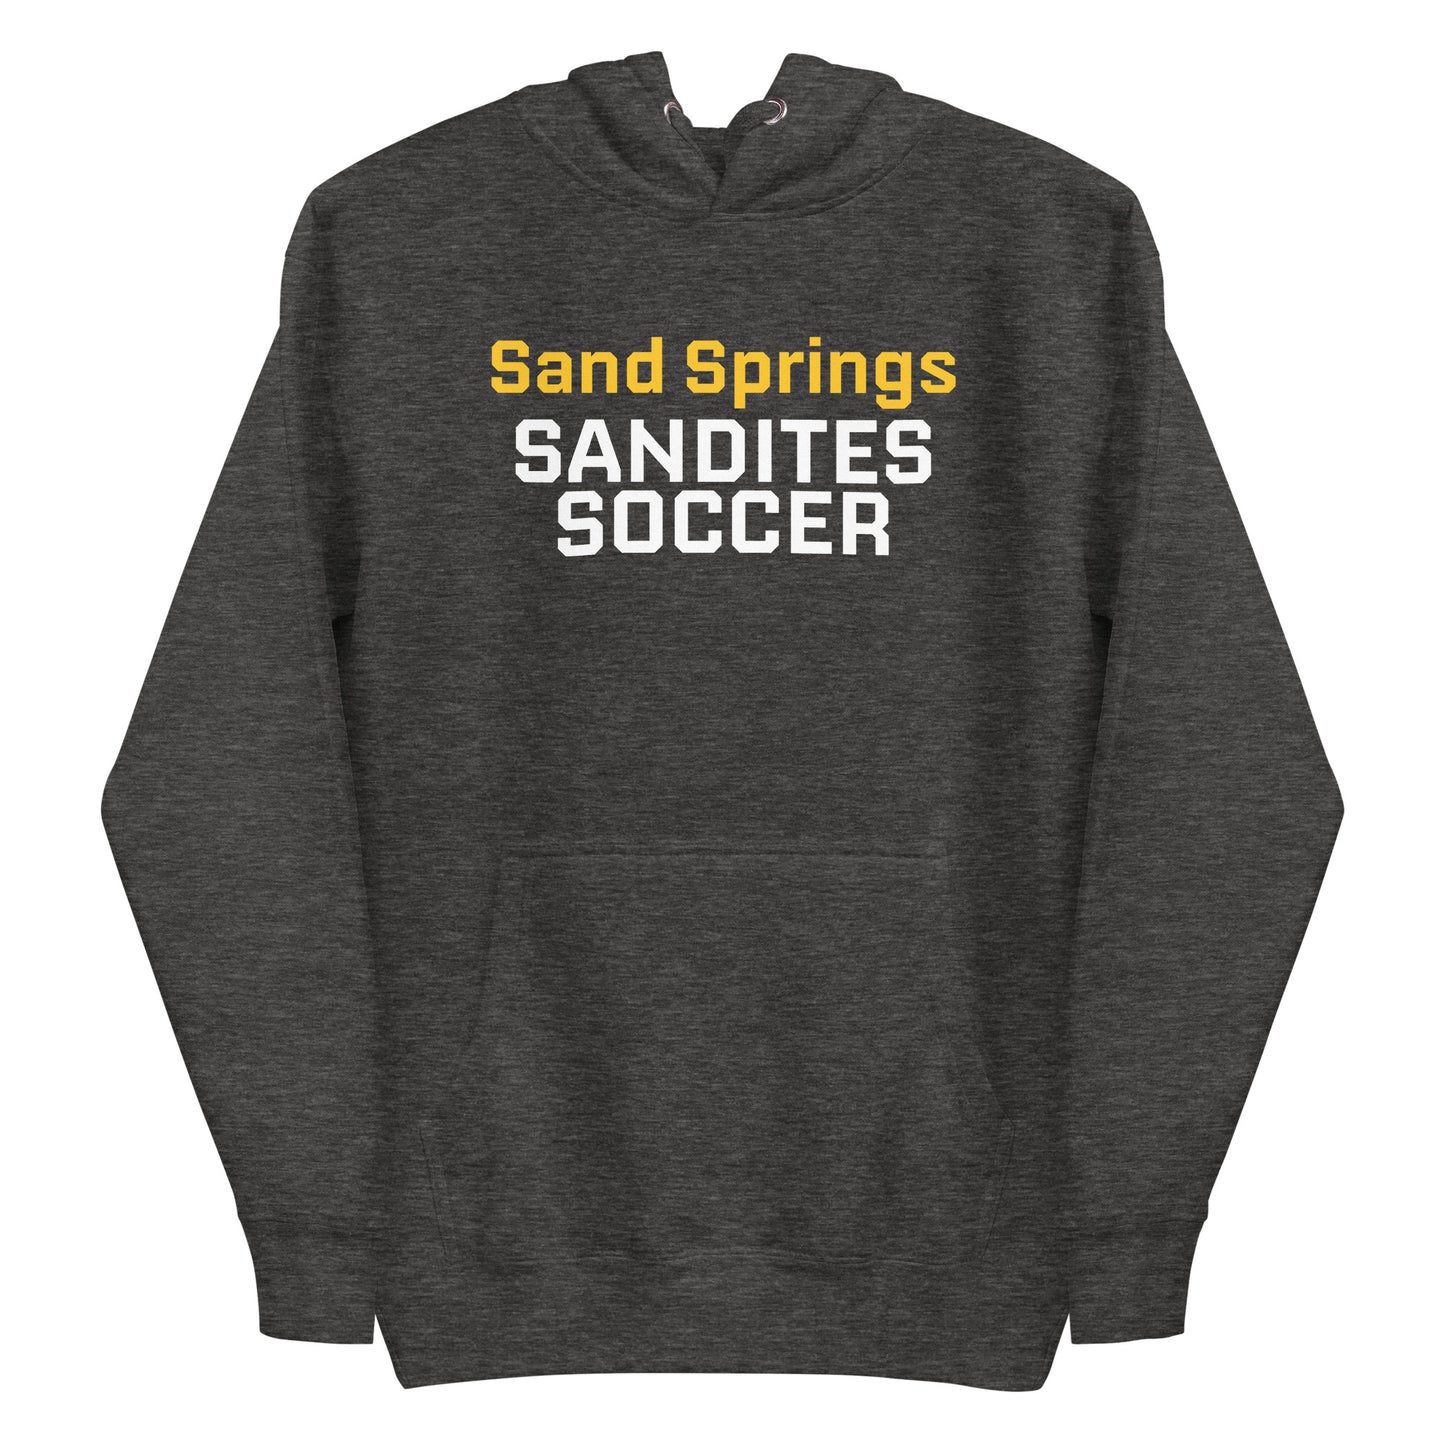 Sandites Soccer - Adult Hoodie